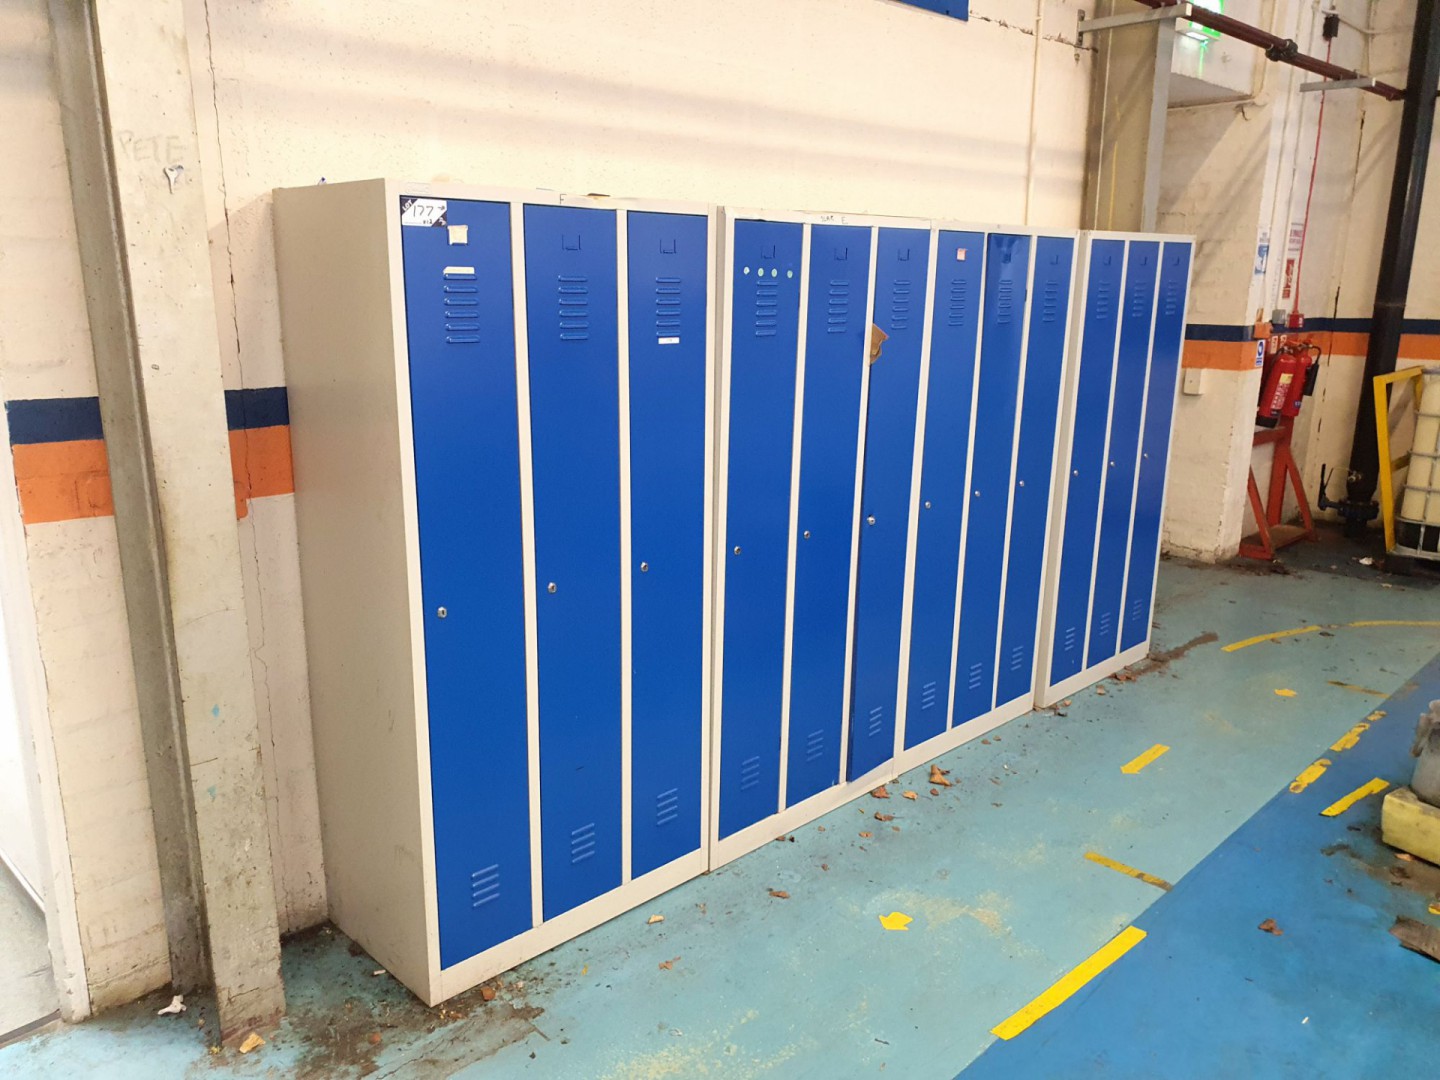 12x Ekwo blue & grey personnel lockers - lot locat...